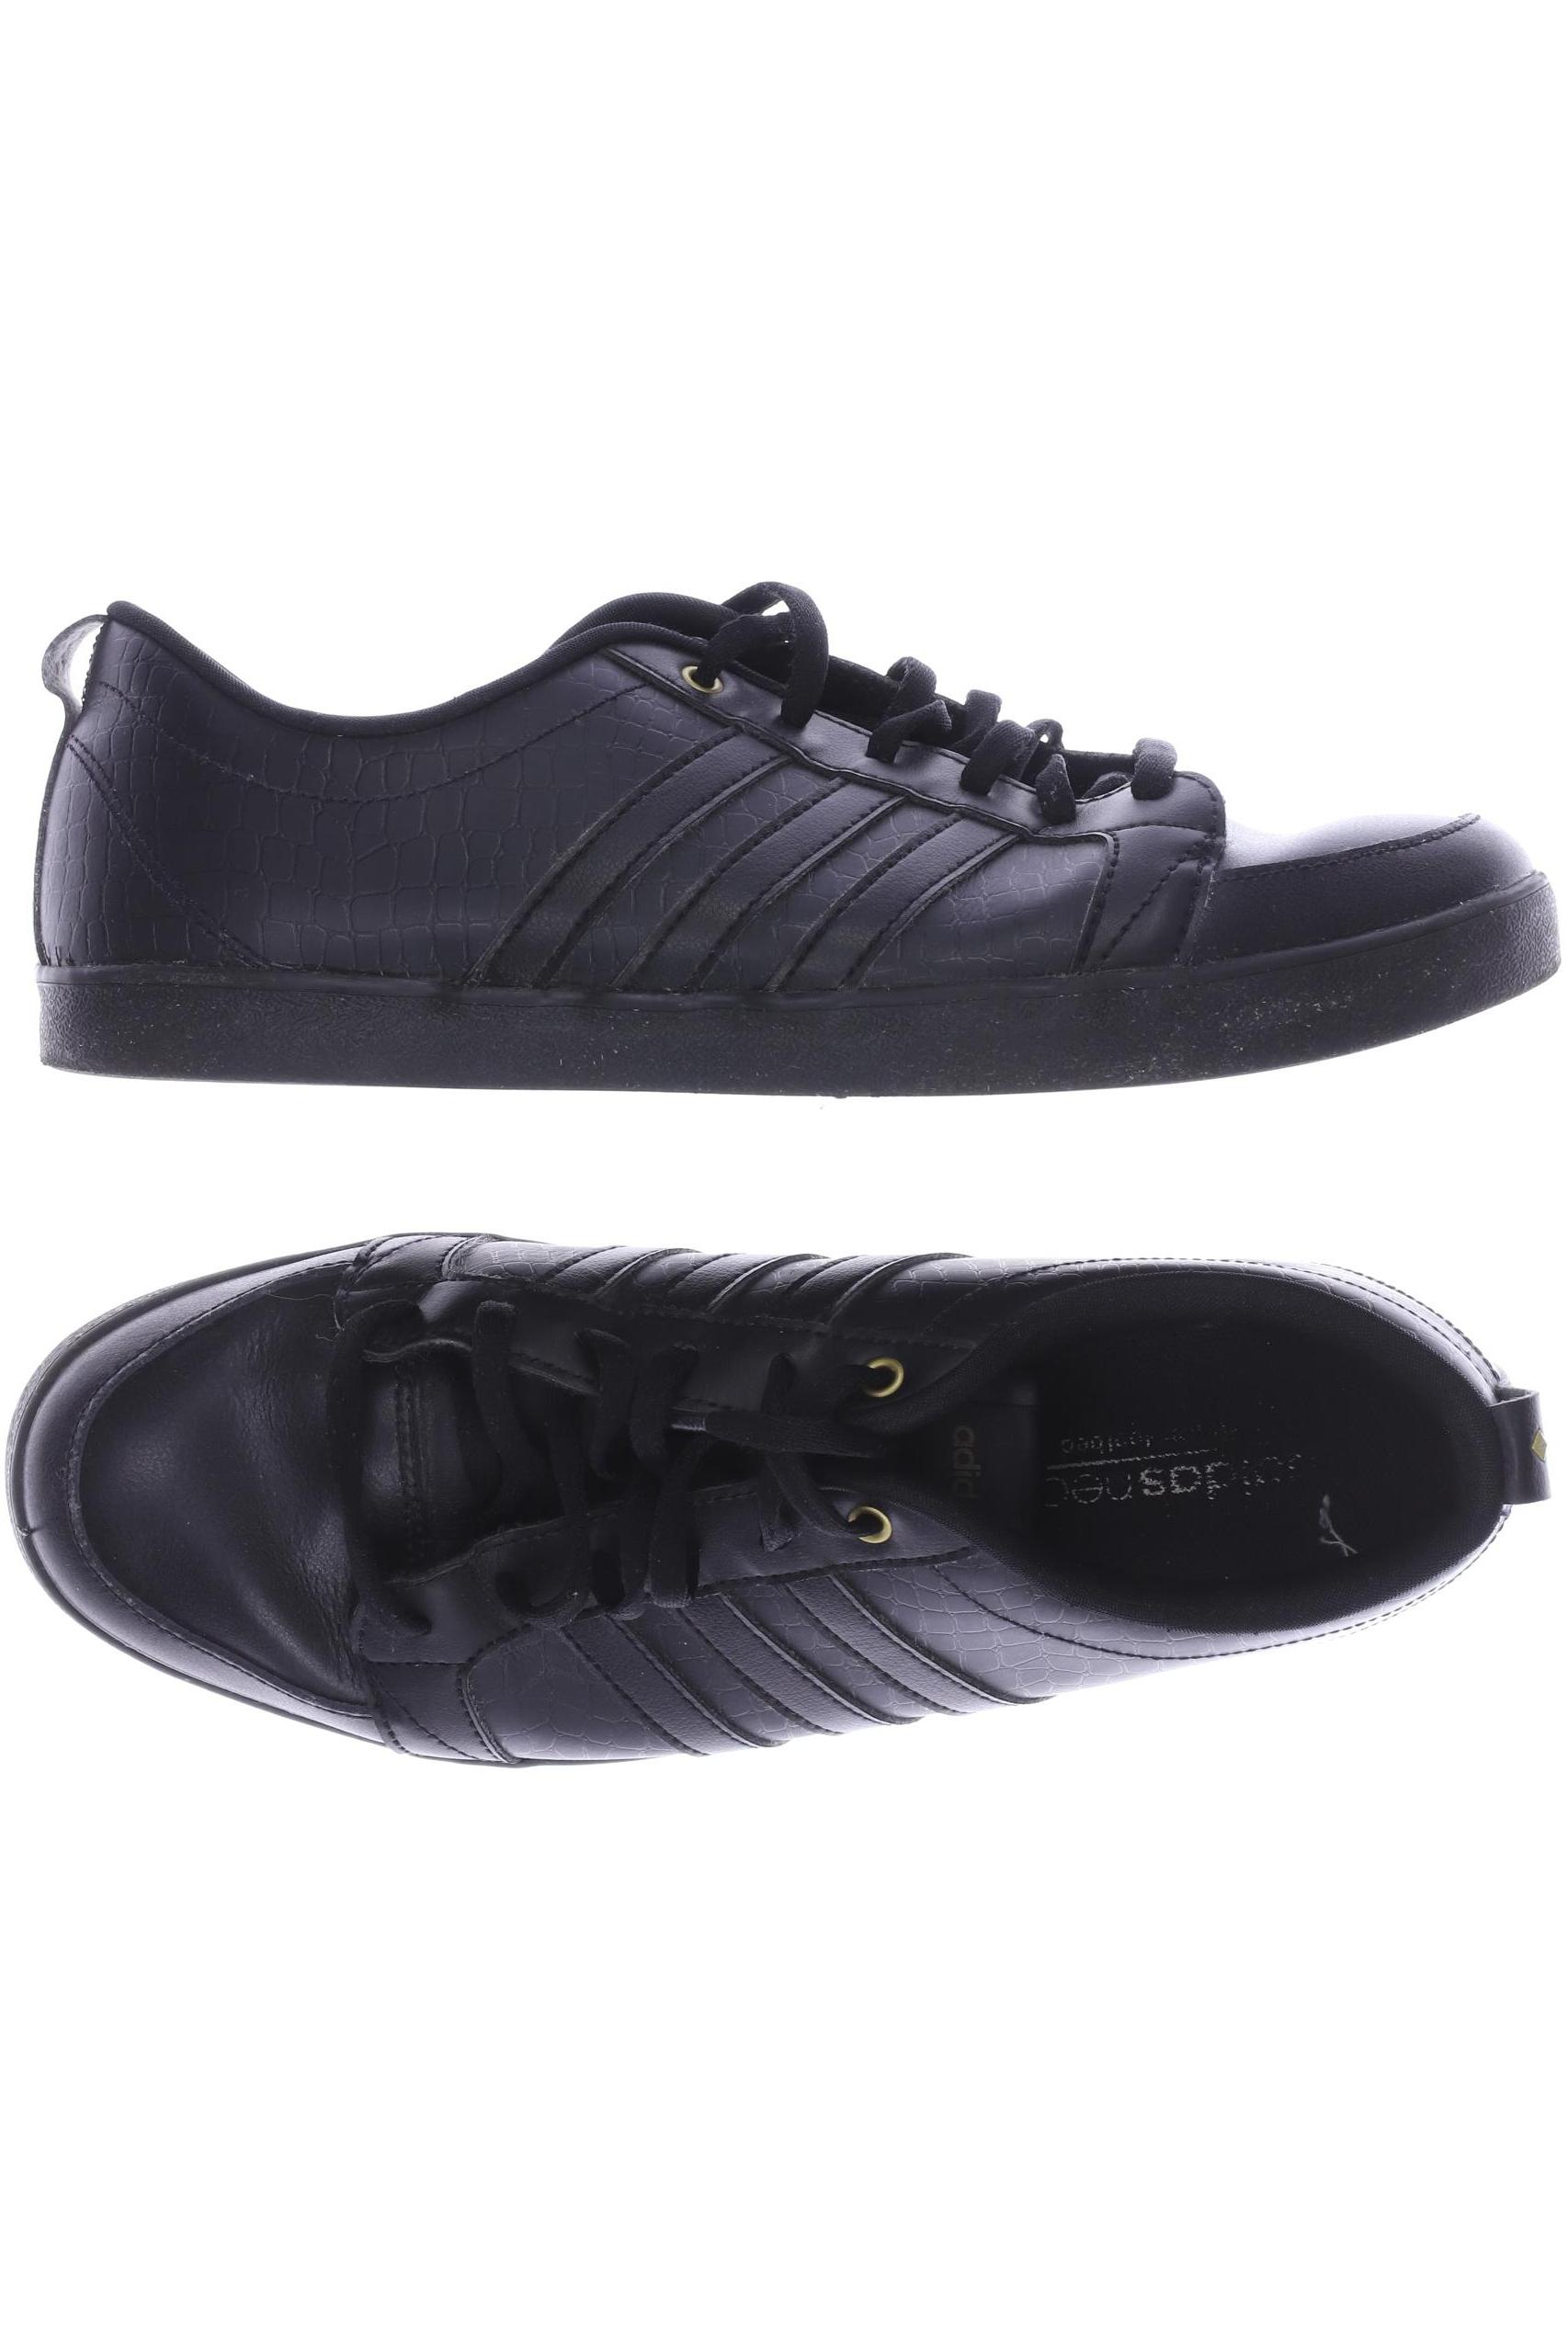 adidas NEO Damen Sneakers, schwarz von adidas neo